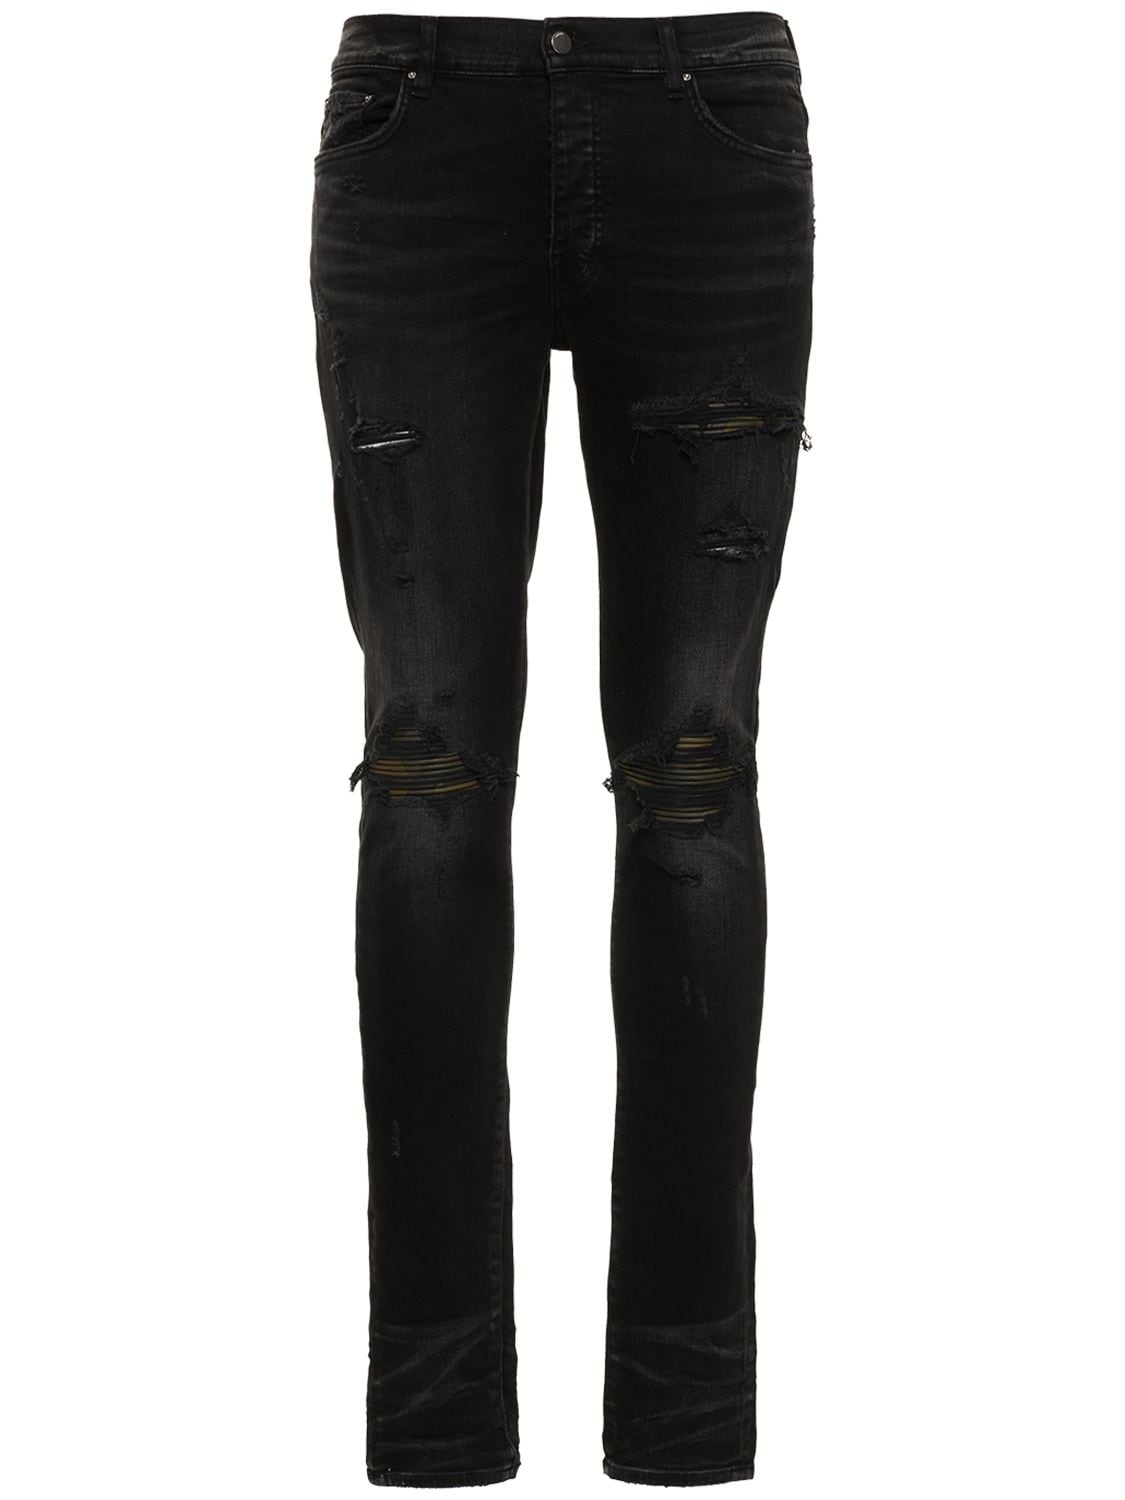 Mx1 Leather Camo Stretch Denim Jeans